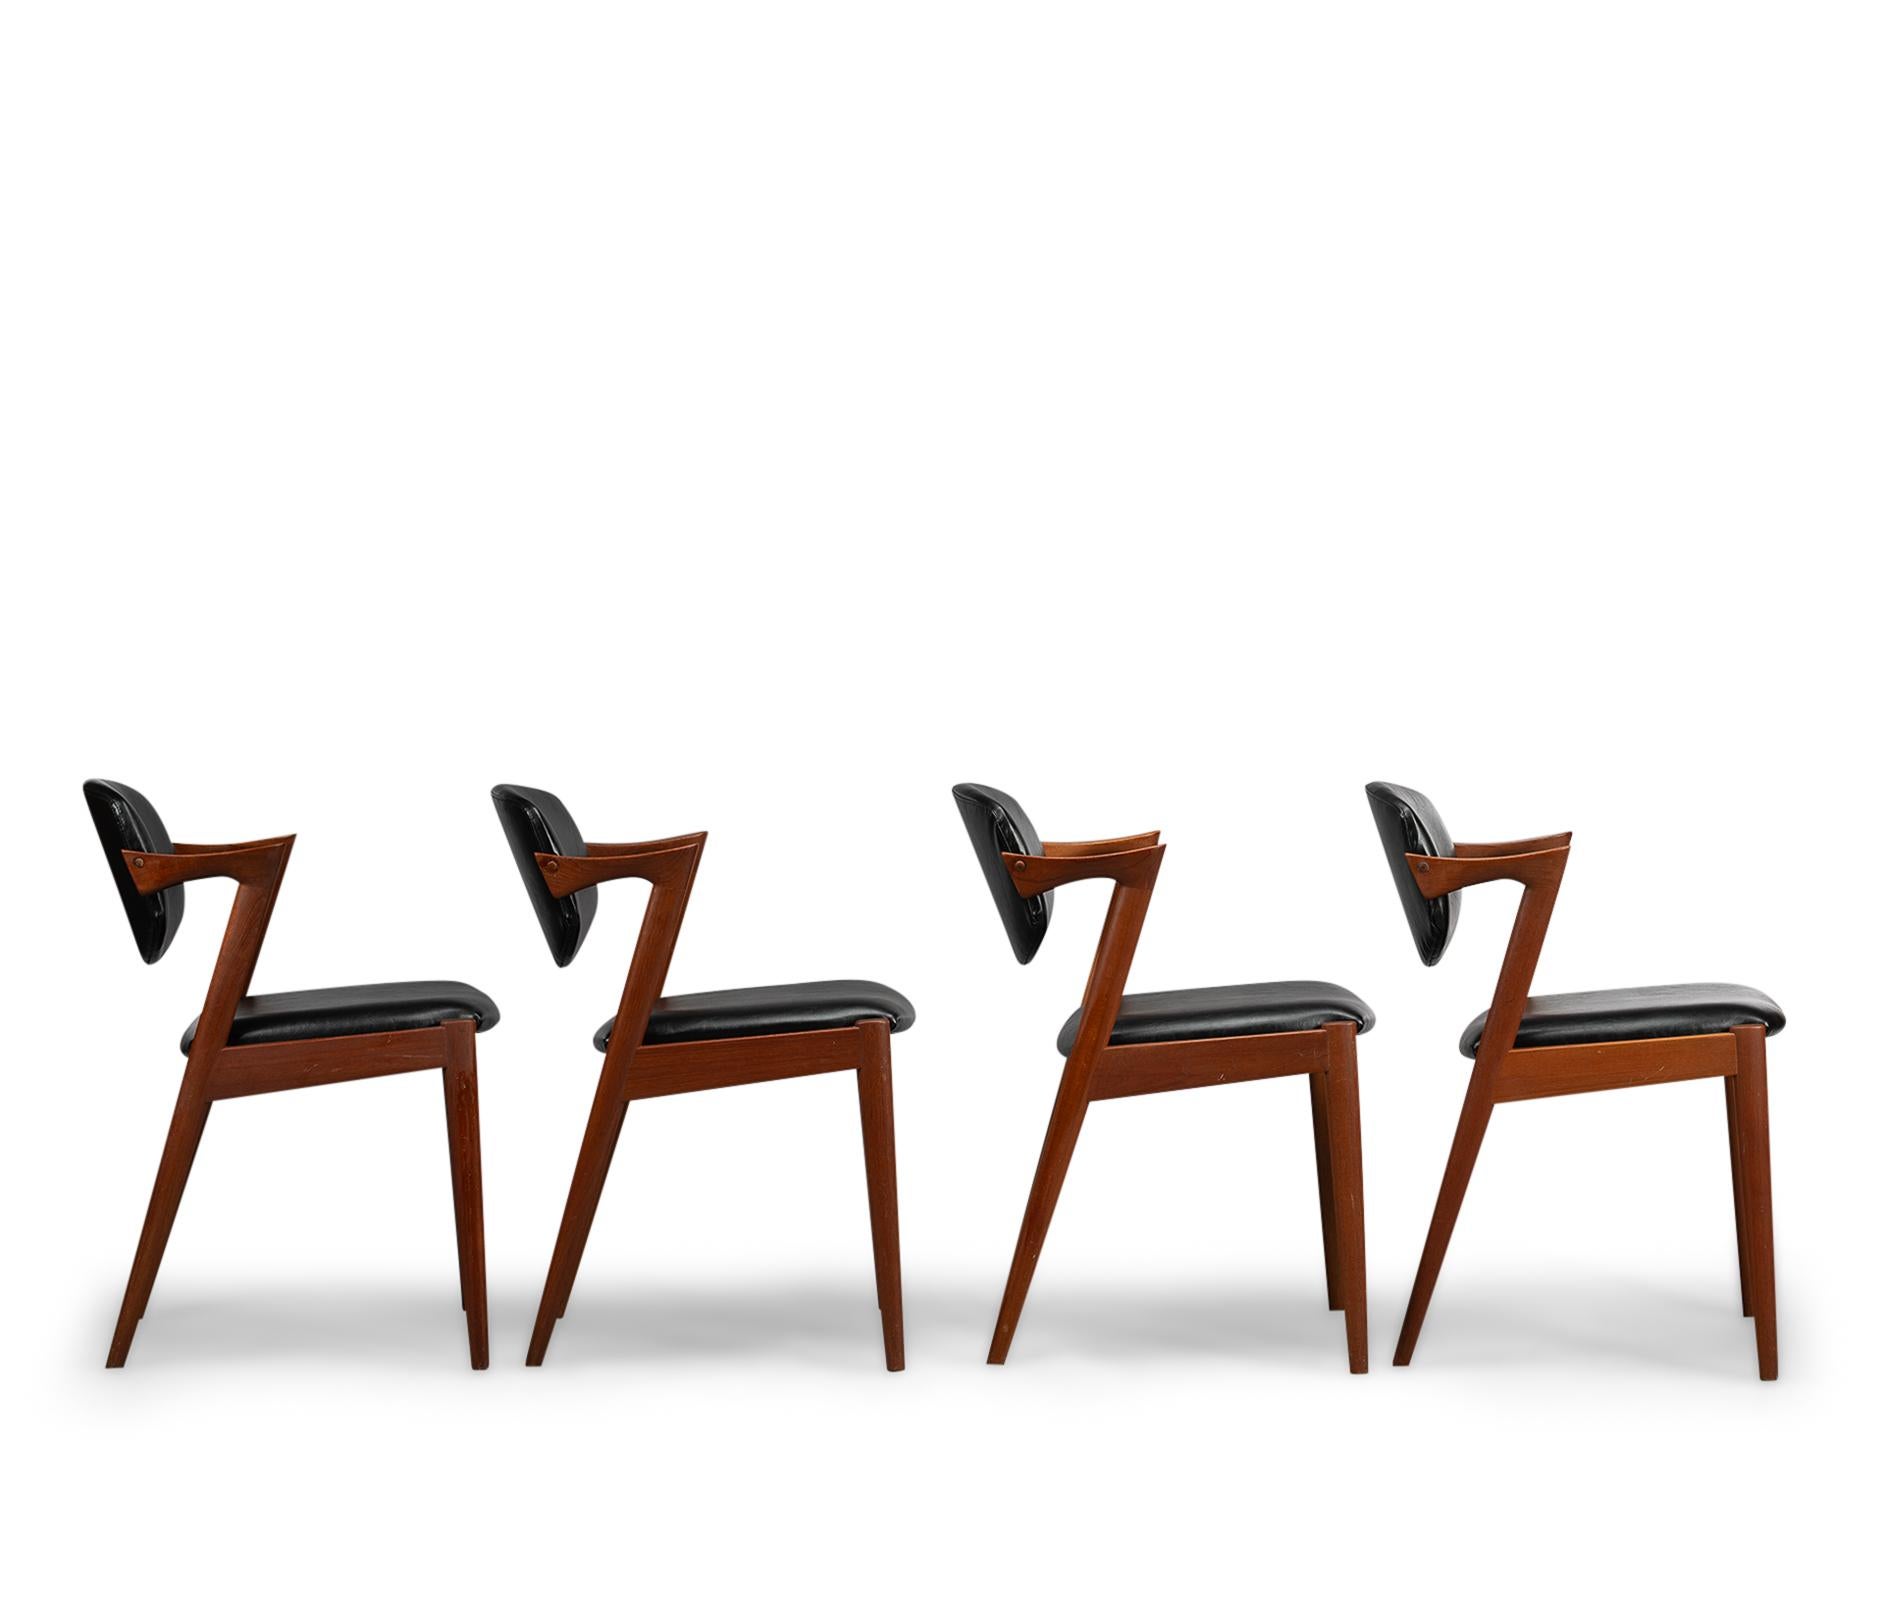 Kai Kristiansen : Modell 42
Der Z-Stuhl, der auch als Stuhl Nr. 42 bezeichnet wird,  nach einem Entwurf von Kai Kristiansen und produziert von Slagelse Møbelvaerk. Dieser Stuhl hat seine Z-Form durch die hängende Rückenlehne. Es ist ein